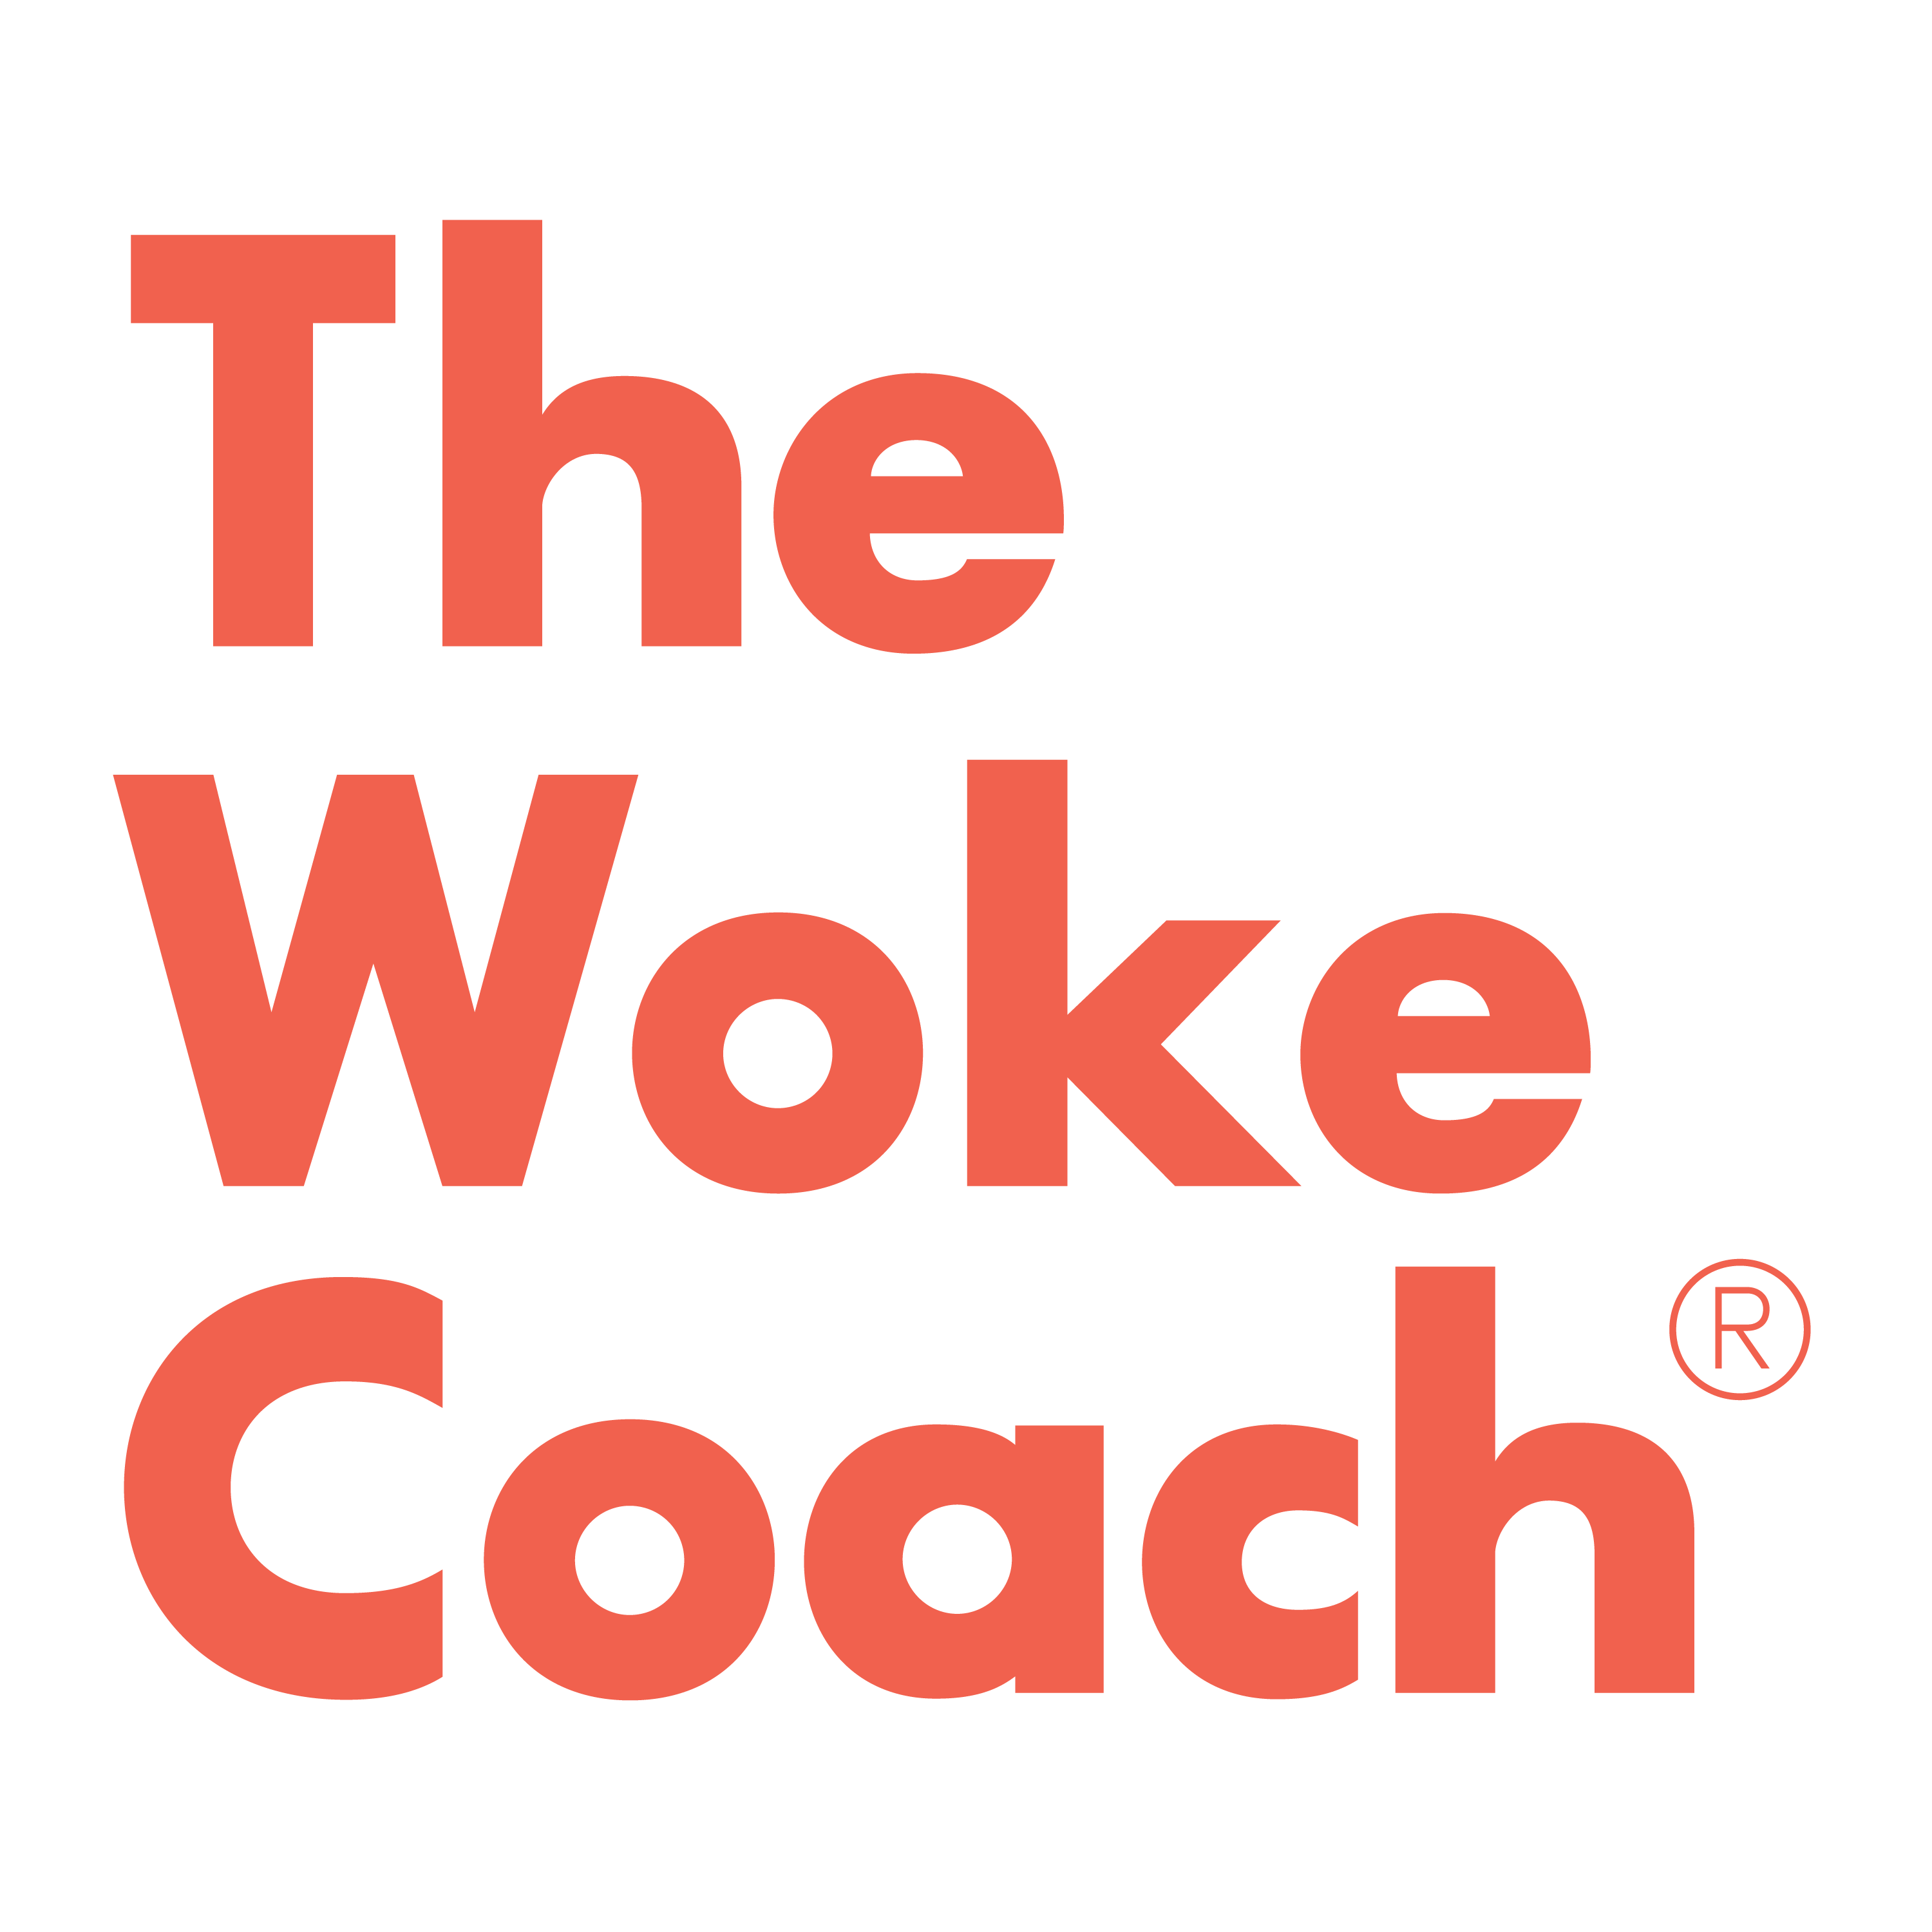 File:Victoria coach logo.svg - Wikipedia